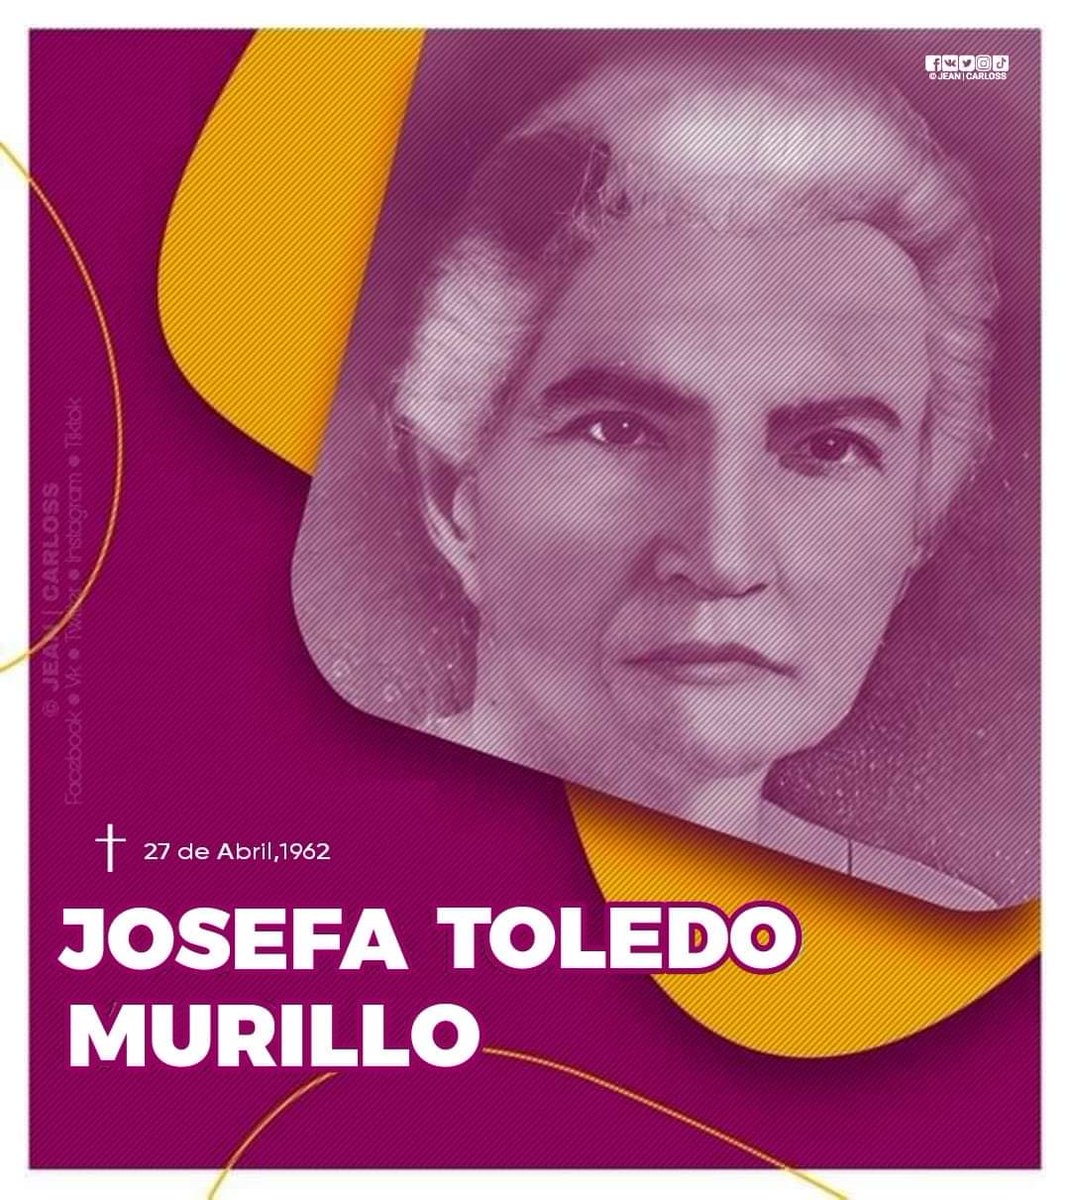 El 27 de abril de 1962, hace 62 años, pasó a otro plano de vida Josefa Toledo de Aguerri. Fue educadora, pedagoga y a lo largo de su vida, promovió los derechos de las mujeres. Pionera del feminismo y la pedagogía moderna nicaragüense. #SomosPLOMO19